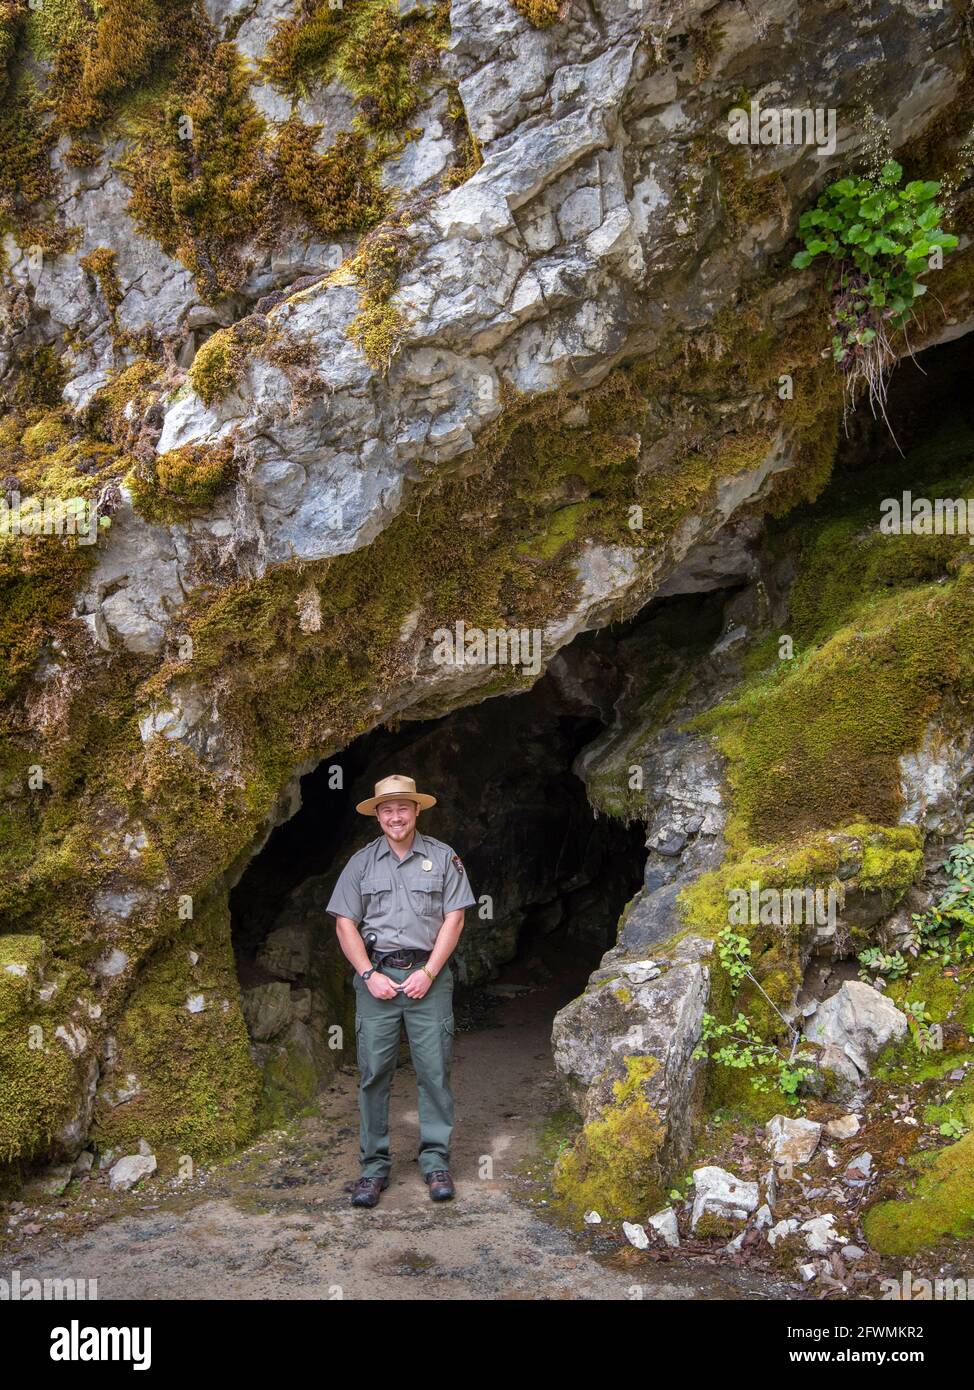 Alex Stillson, gardien des parcs nationaux, à l'entrée d'une grotte du monument national des grottes de l'Oregon, Oregon. Banque D'Images